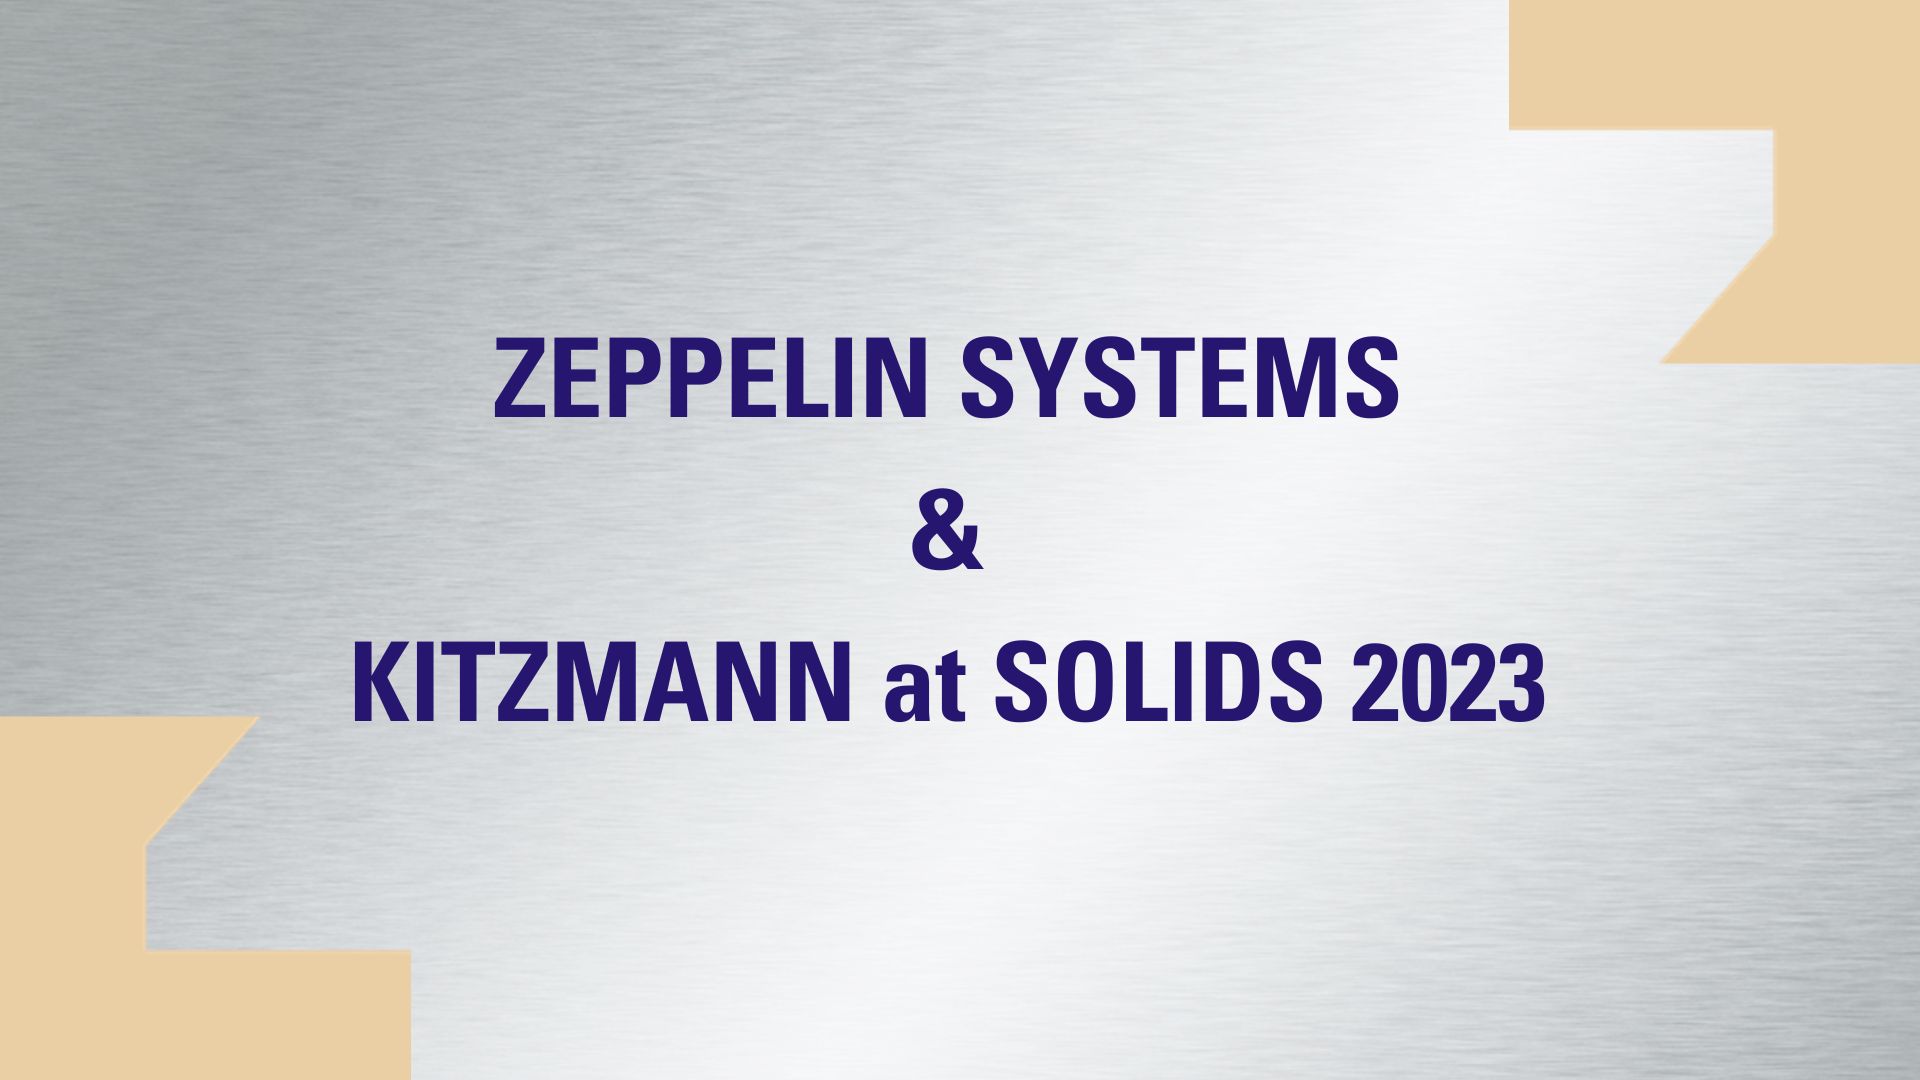 Zeppelin Systems präsentiert sich auf der SOLIDS Fachmesse 2023